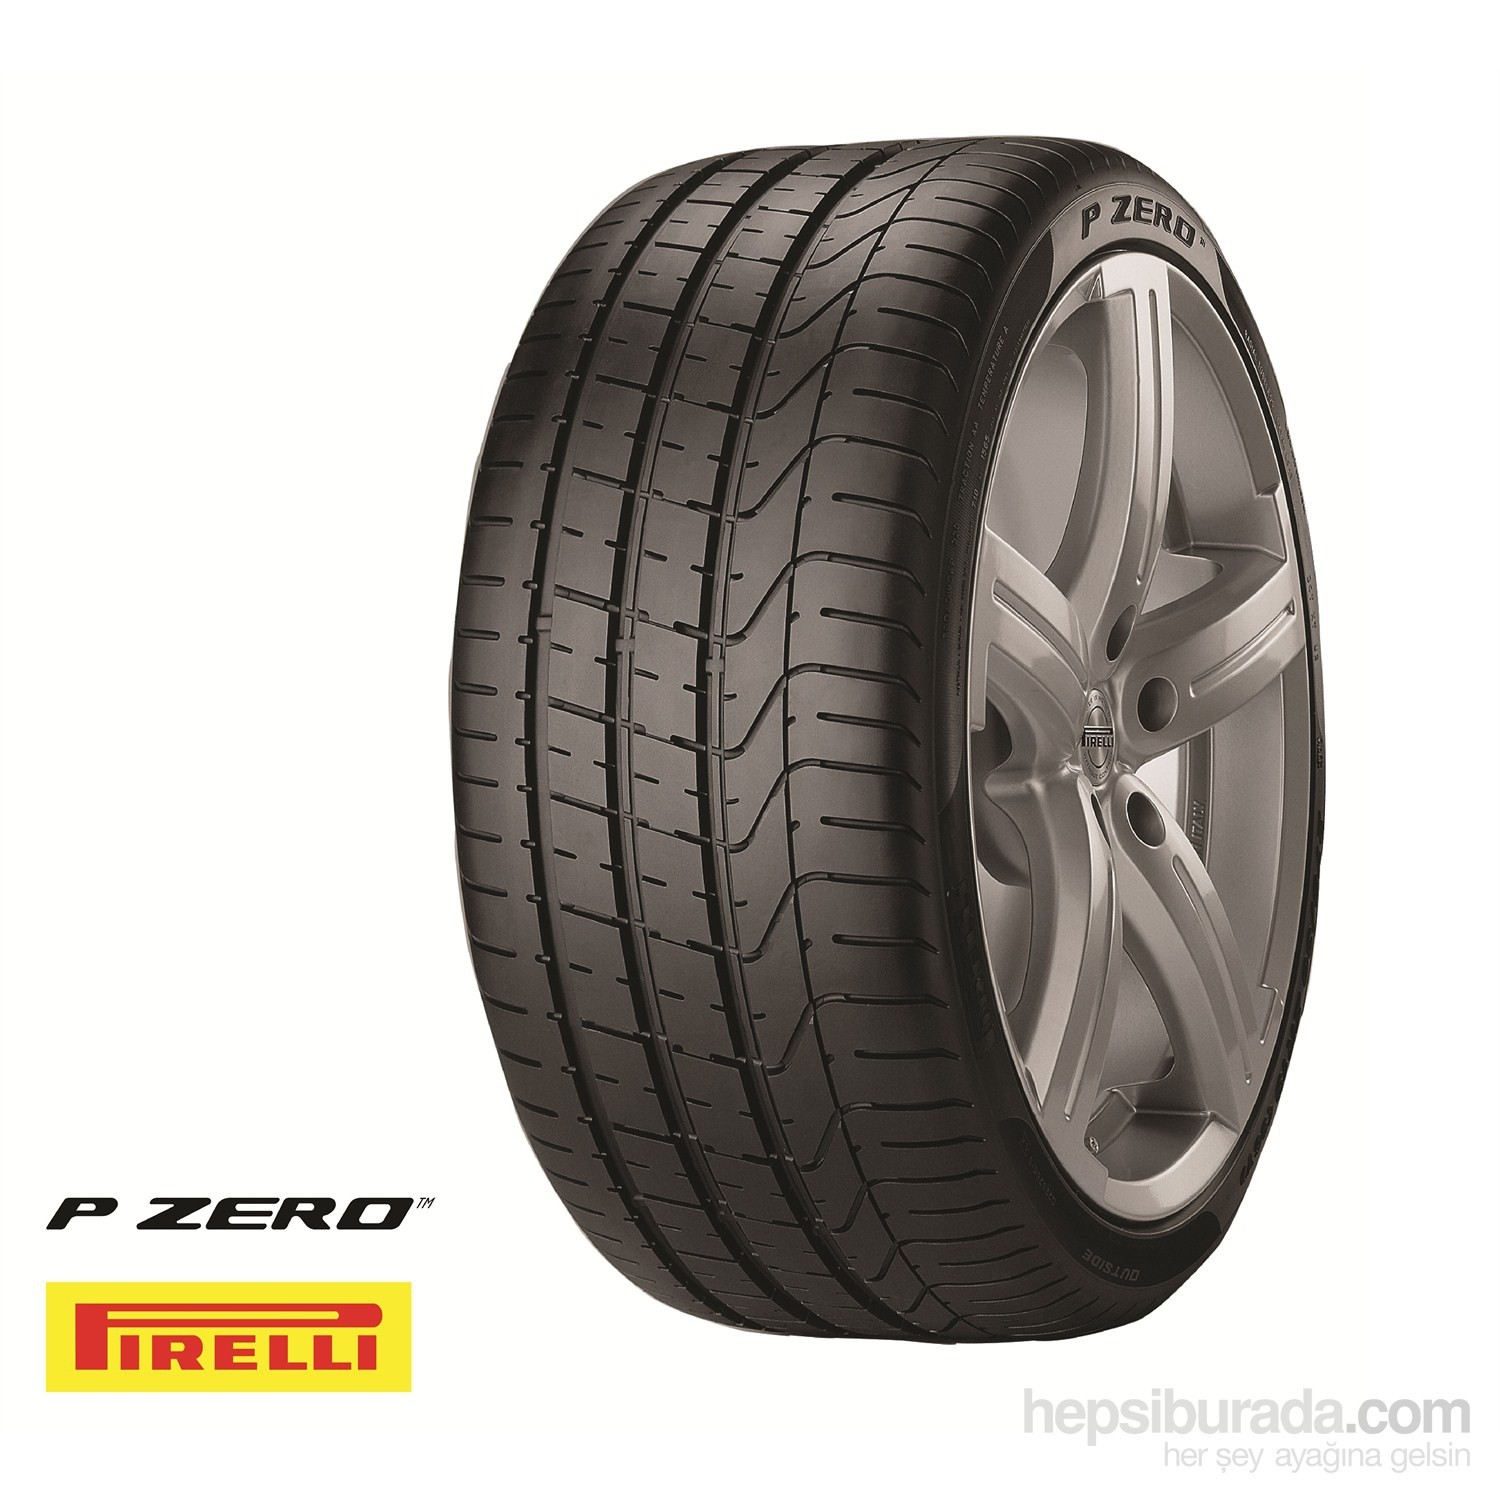 Pirelli 255/45r19 100w p Zero mo TL. Pirelli 255/40r19 100y XL P Zero ao TL. Pirelli 255/40r20 101y XL Powergy TL. Pirelli PZERO 245/35 r20. Купить летние шины в челнах